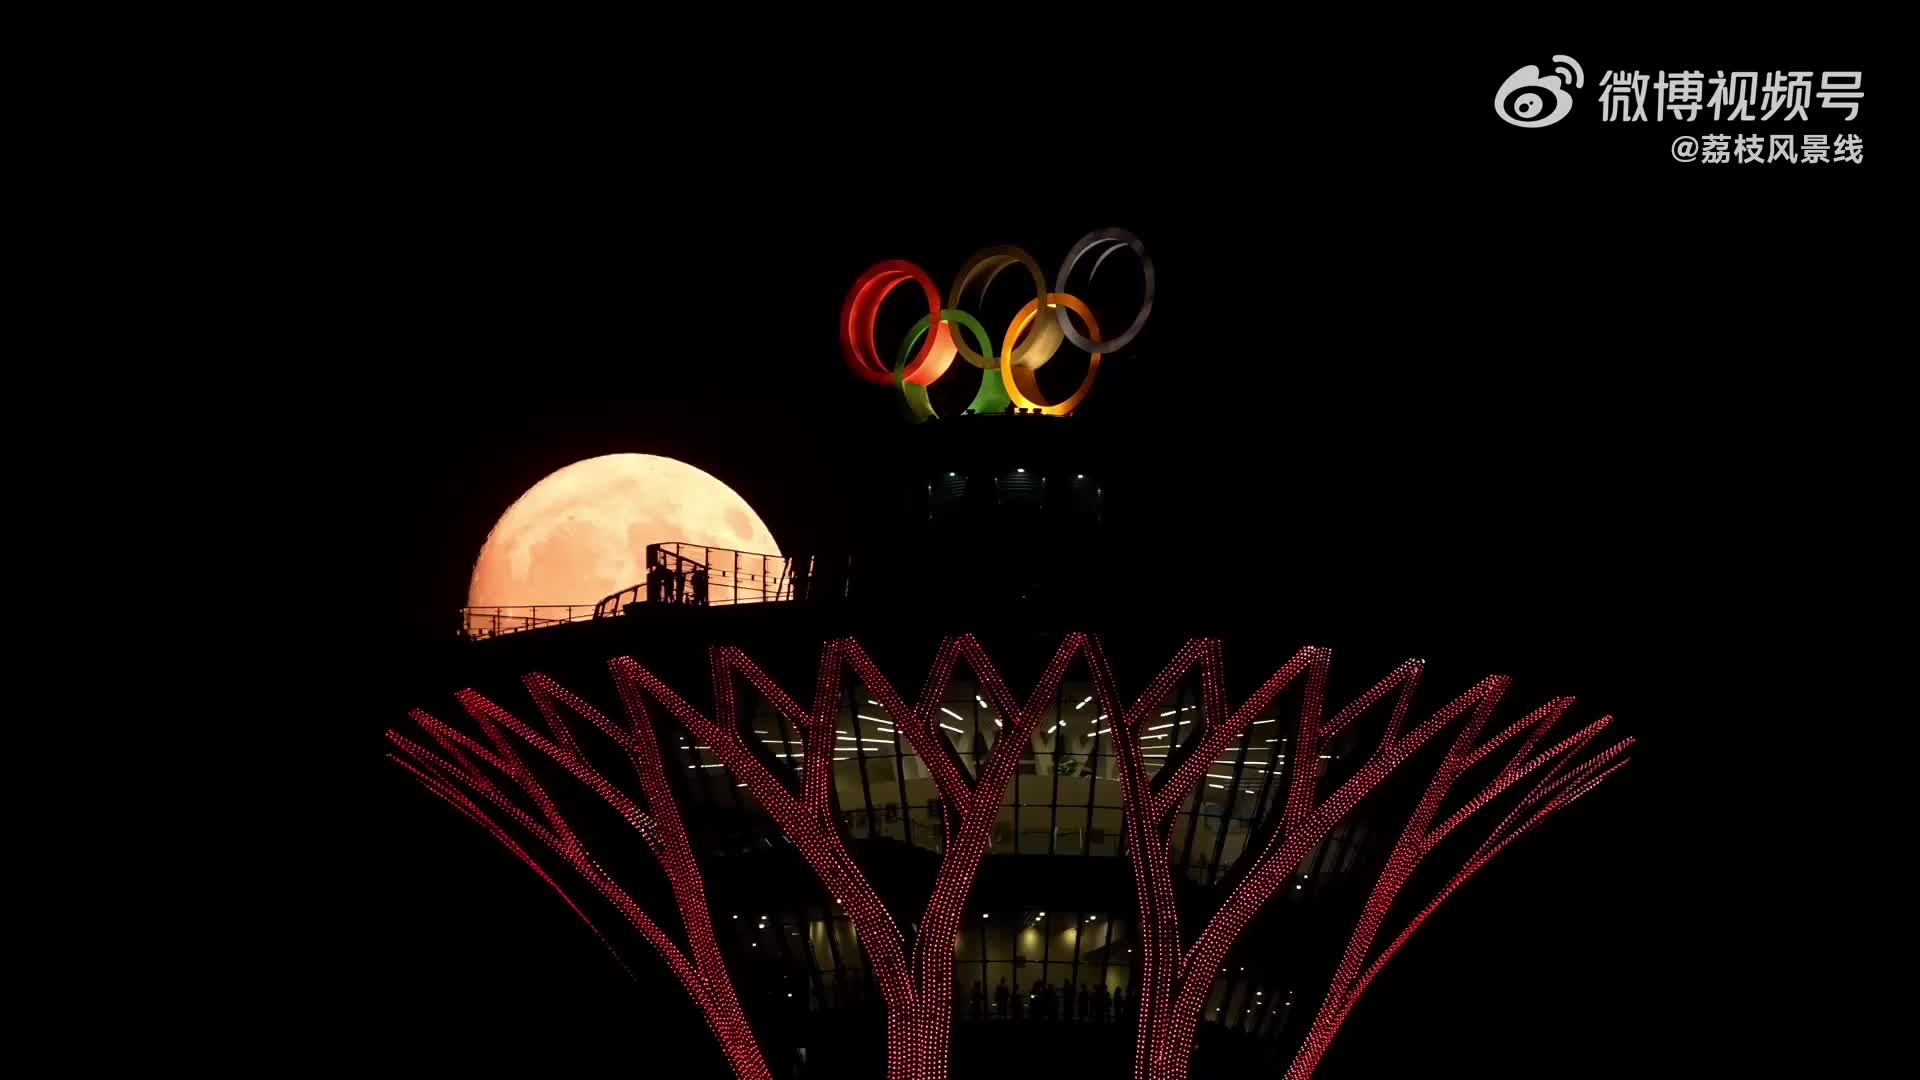 圆满奥运!摄影师拍下满月穿过北京奥林匹克塔